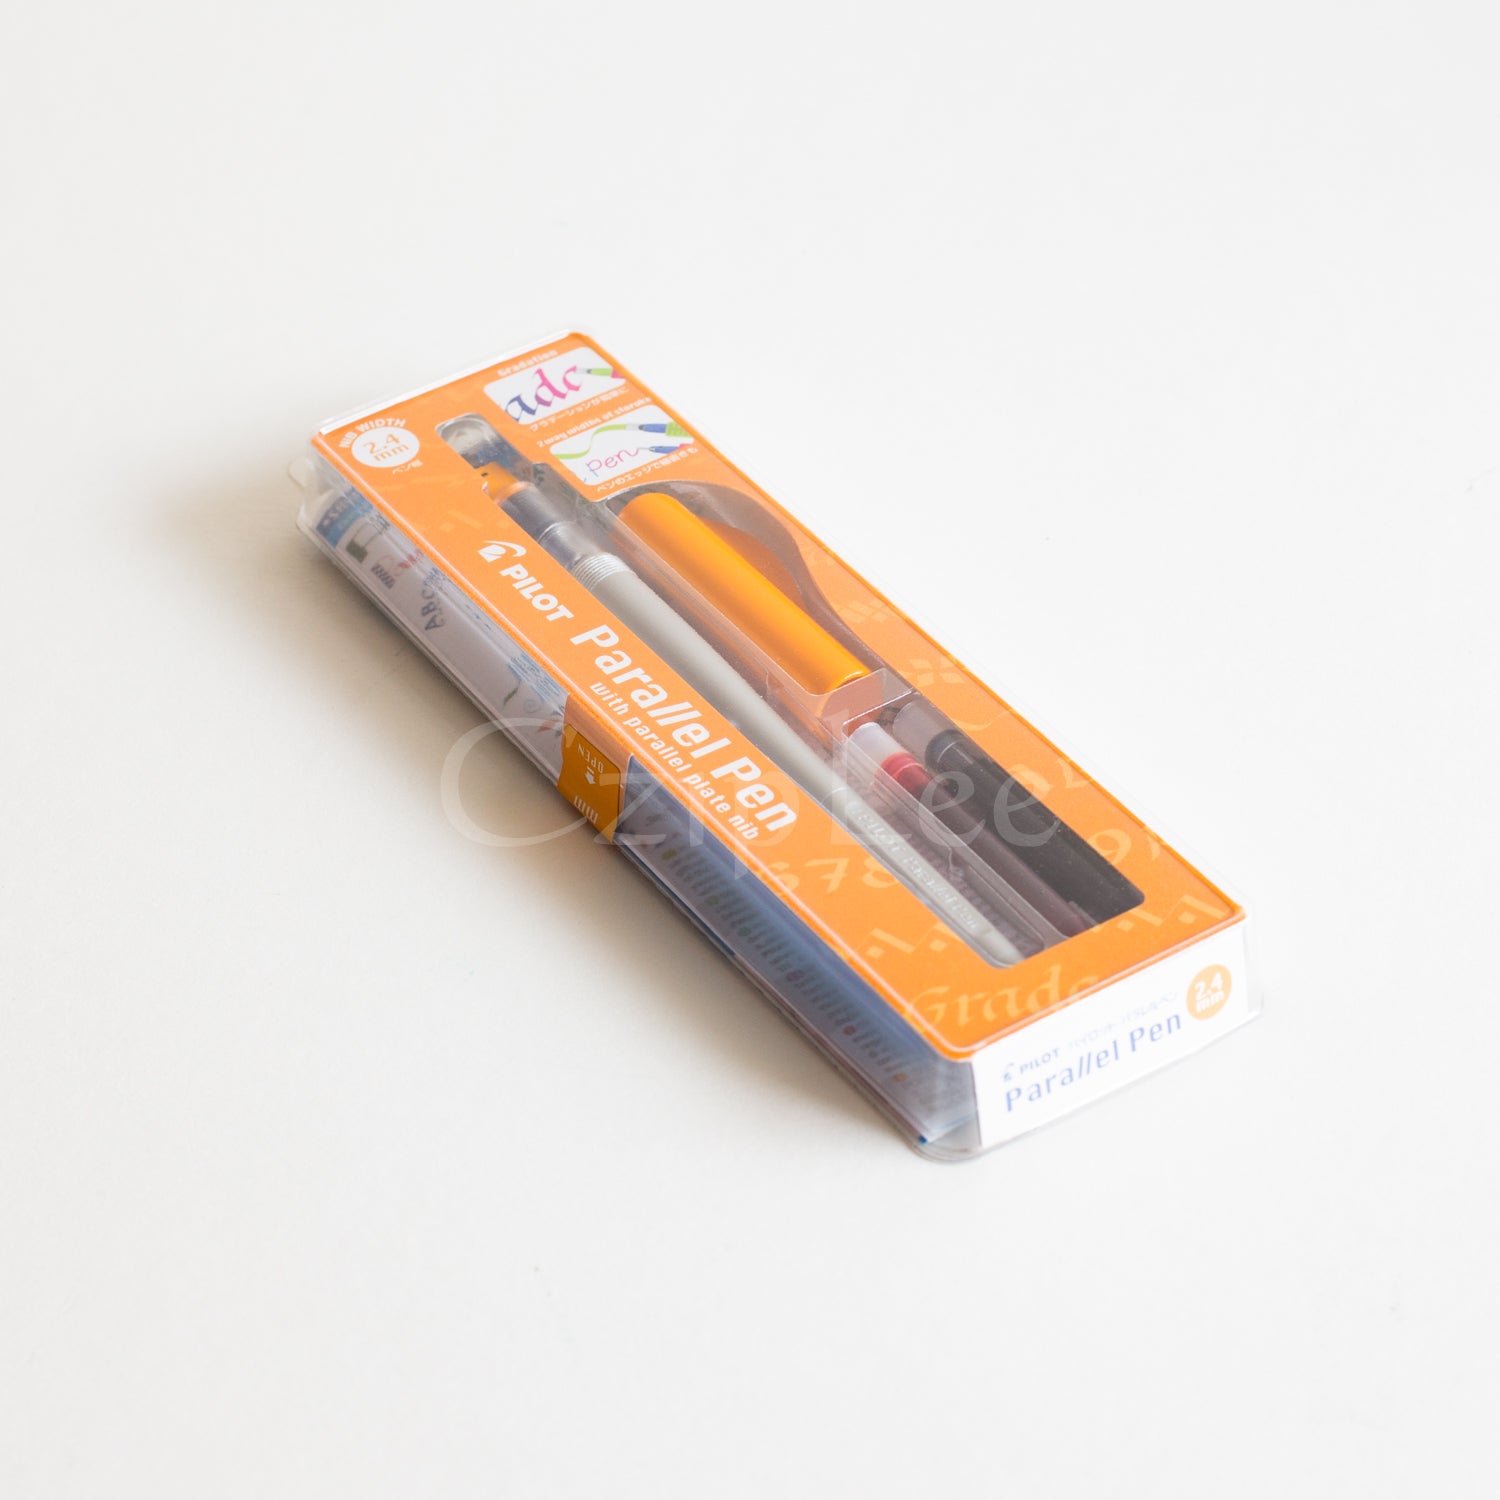 PILOT Parallel Pen 2.4mm Orange